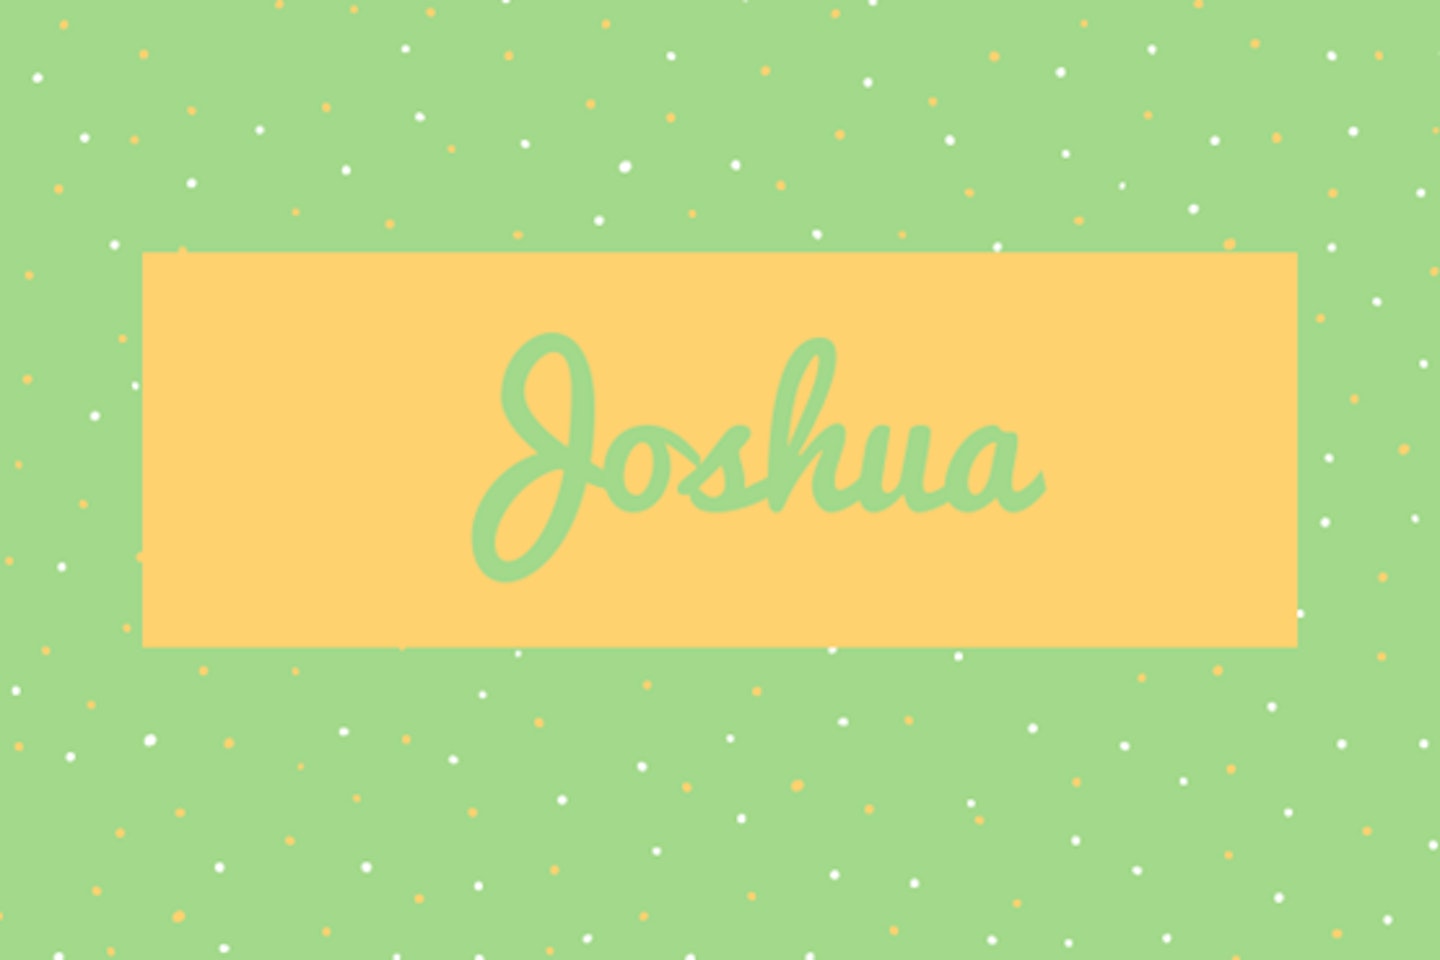 36) Joshua